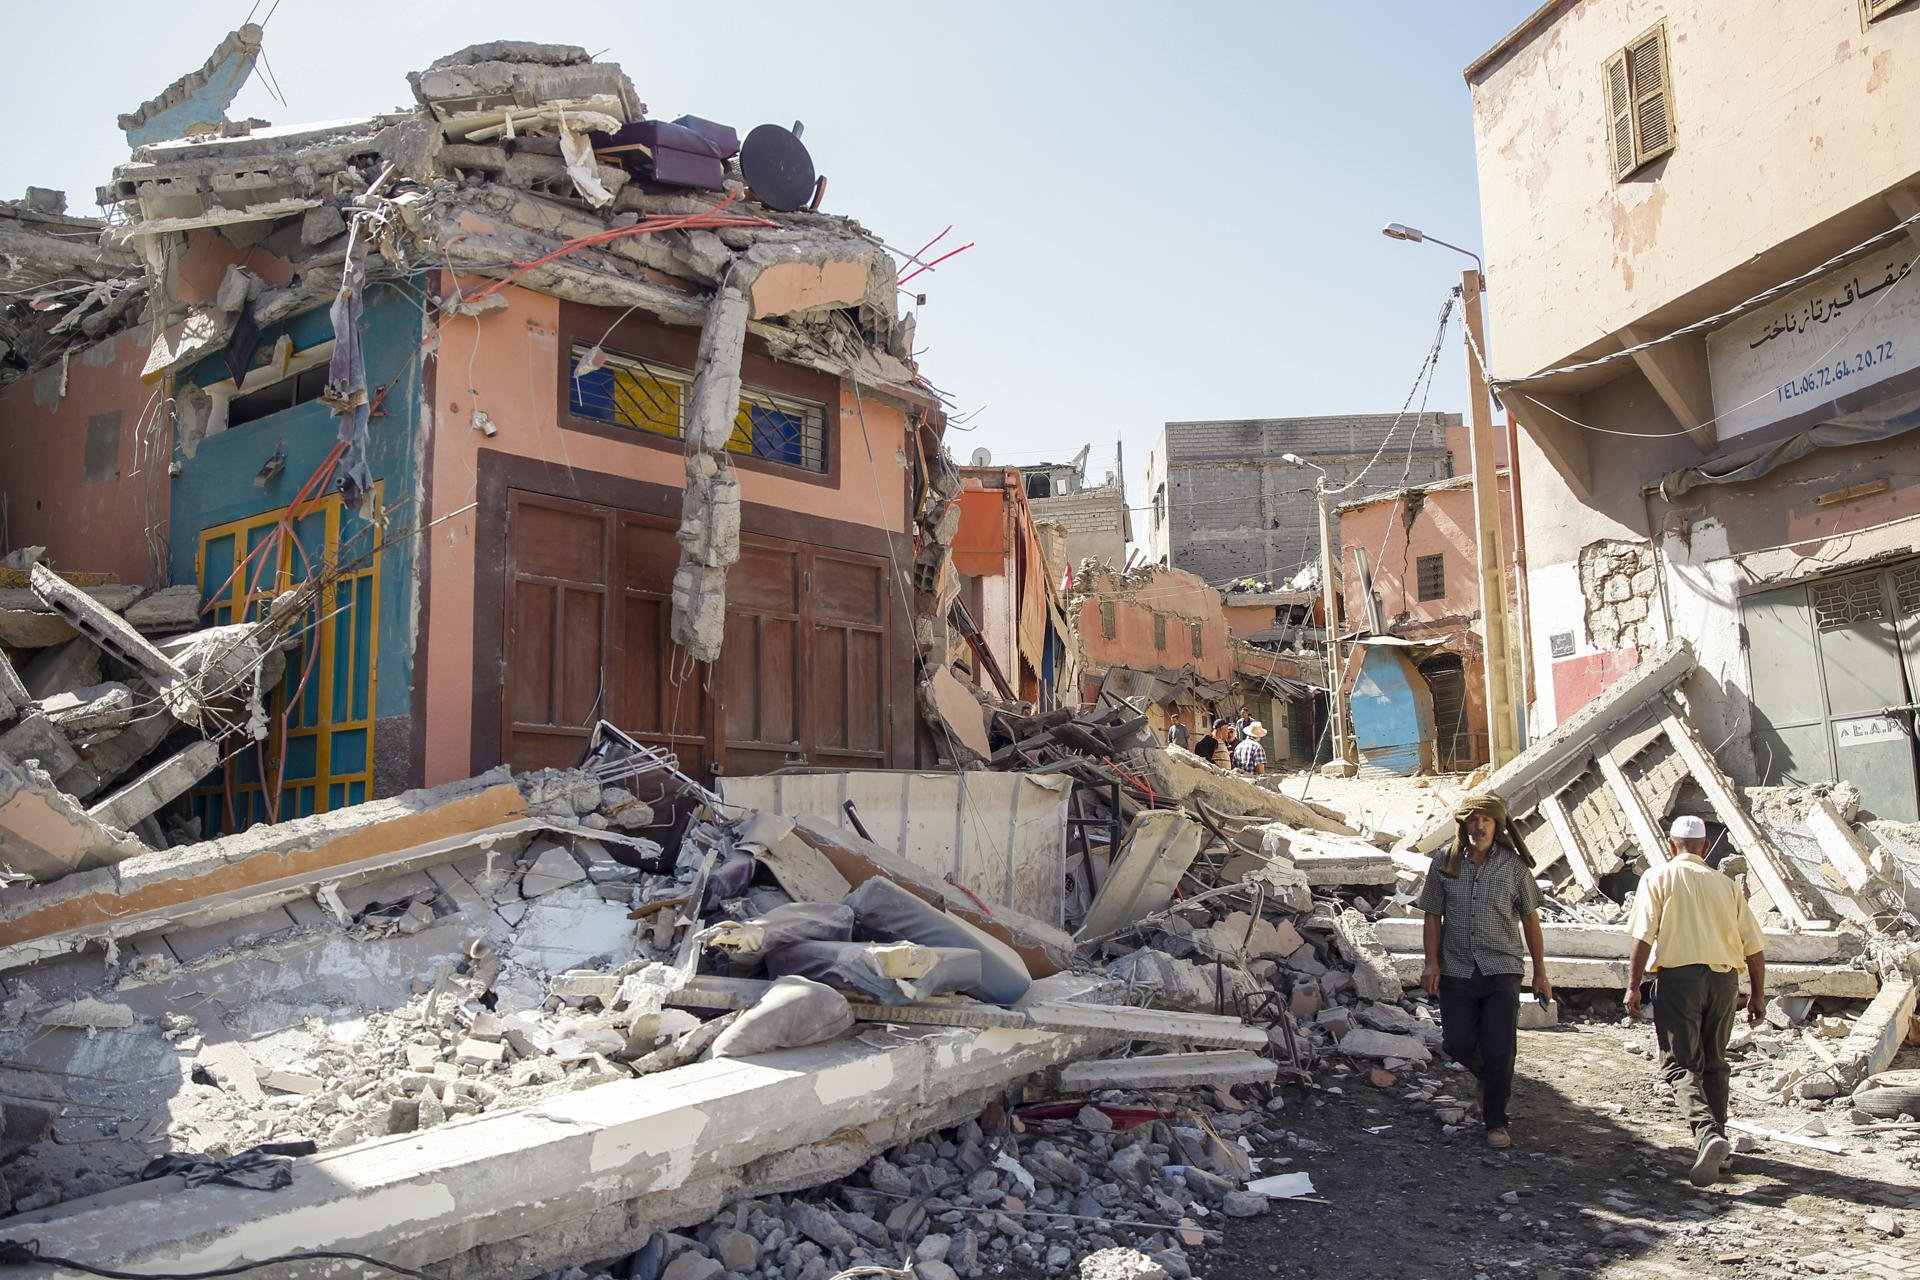 El terremoto de Marruecos no ha causado muertos ni heridos catalanes ni españoles por ahora